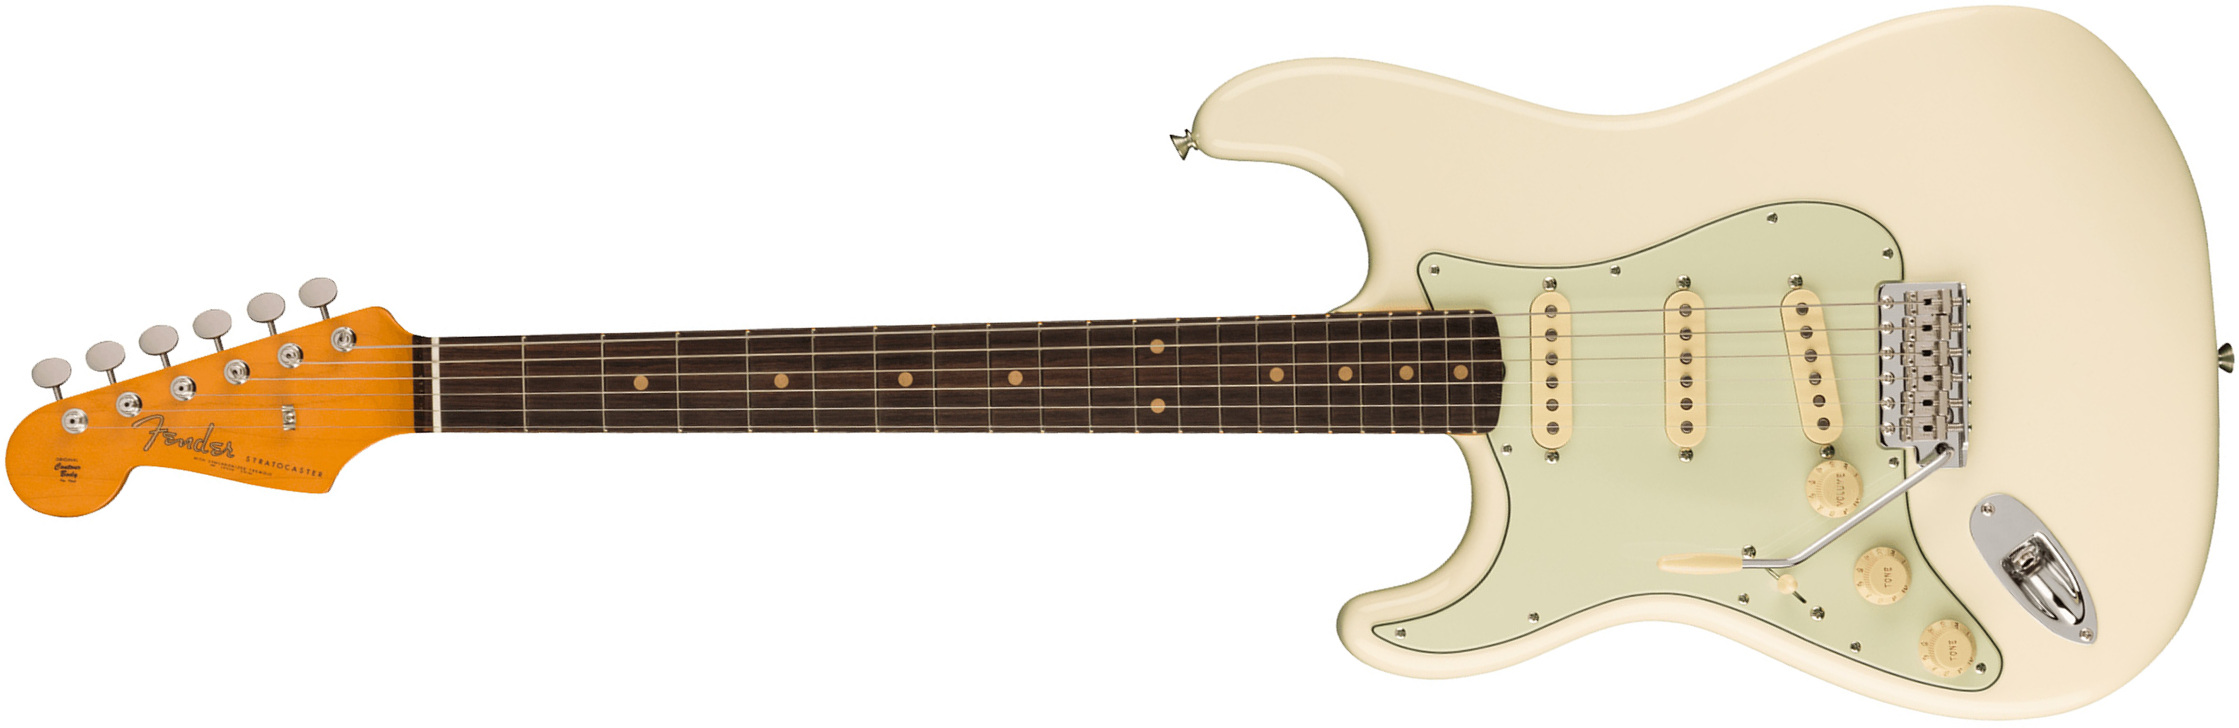 Fender Strat 1961 American Vintage Ii Lh Gaucher Usa 3s Trem Rw - Olympic White - E-Gitarre für Linkshänder - Main picture